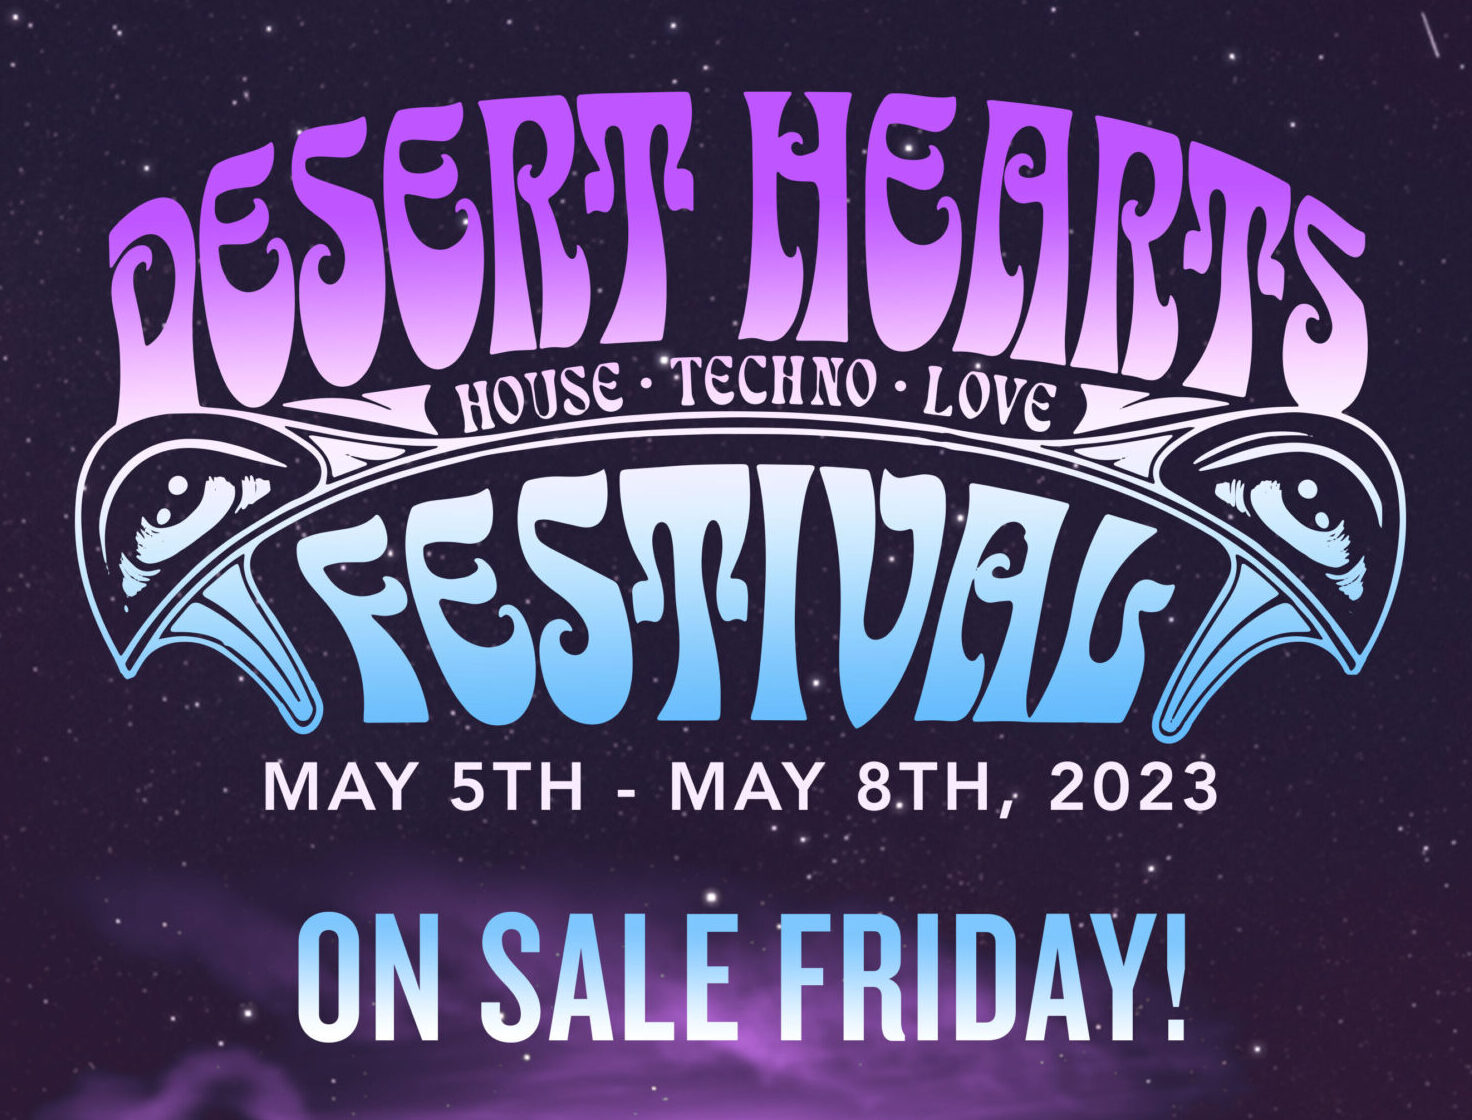 DESERT HEARTS FESTIVAL 2023 anuncia la venta de boletos este Viernes 12